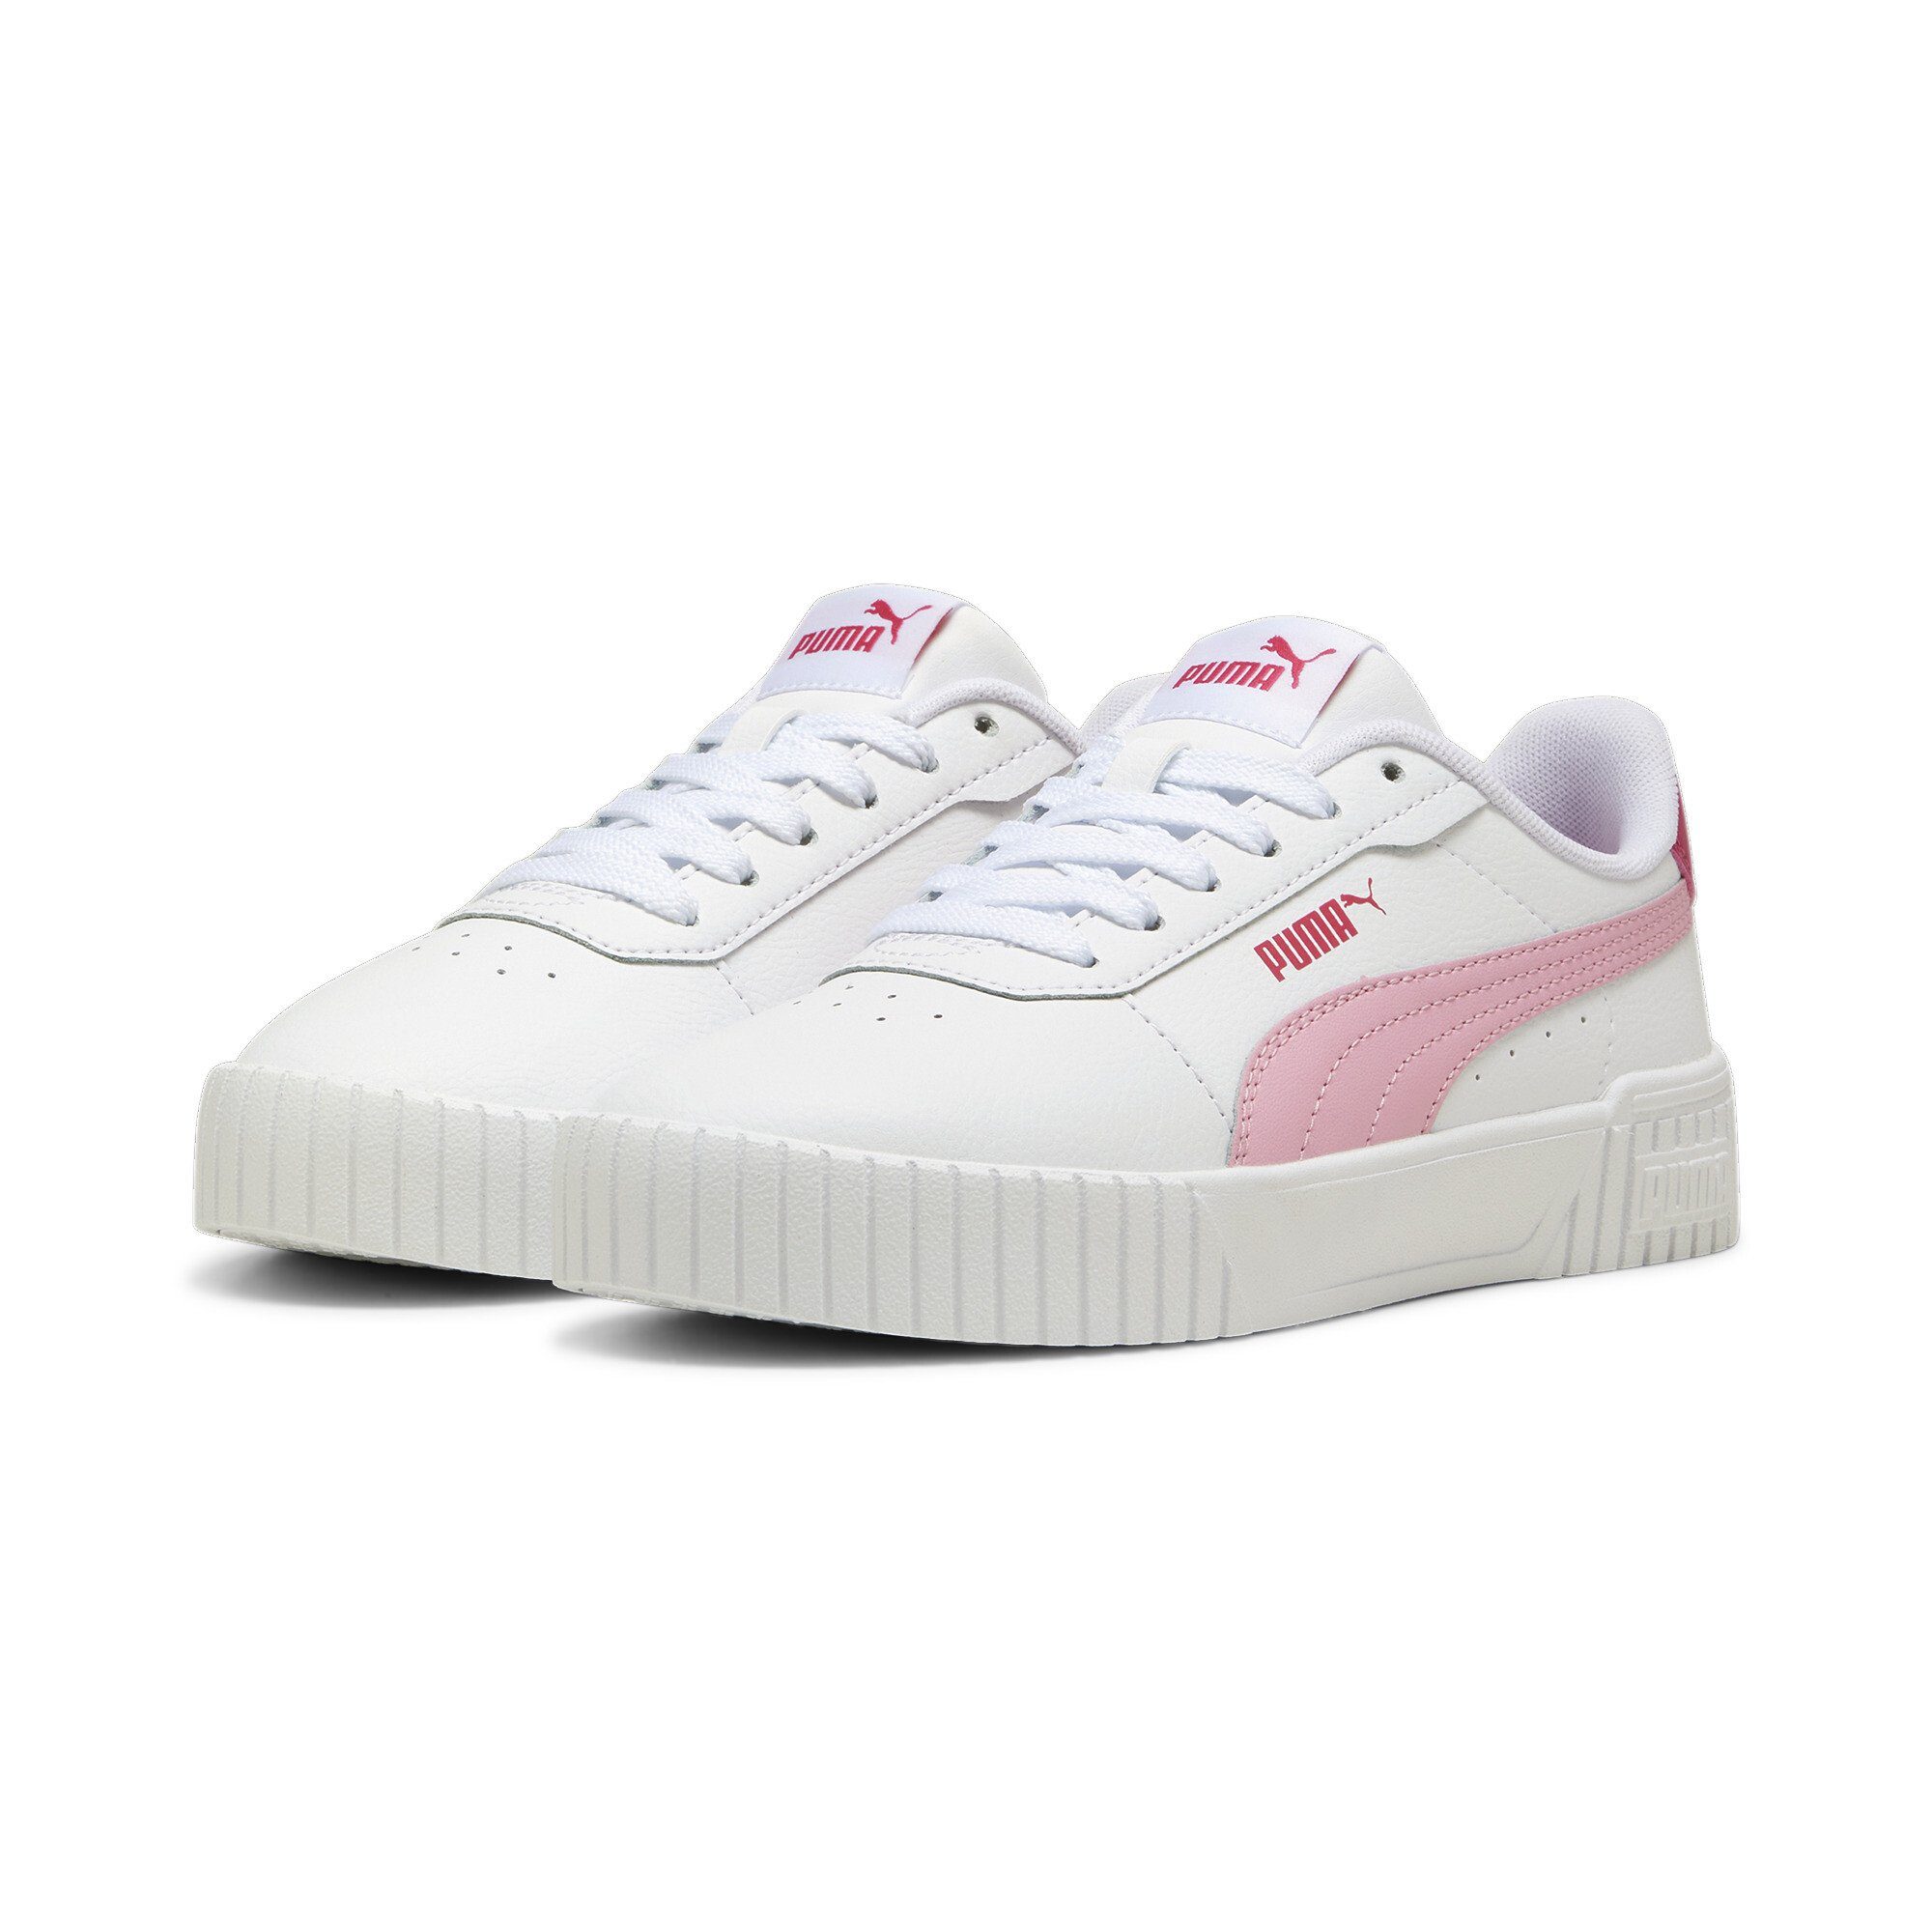 Carina PUMA Sneakers Jugendliche 2.0 Sneaker Pink White Lilac